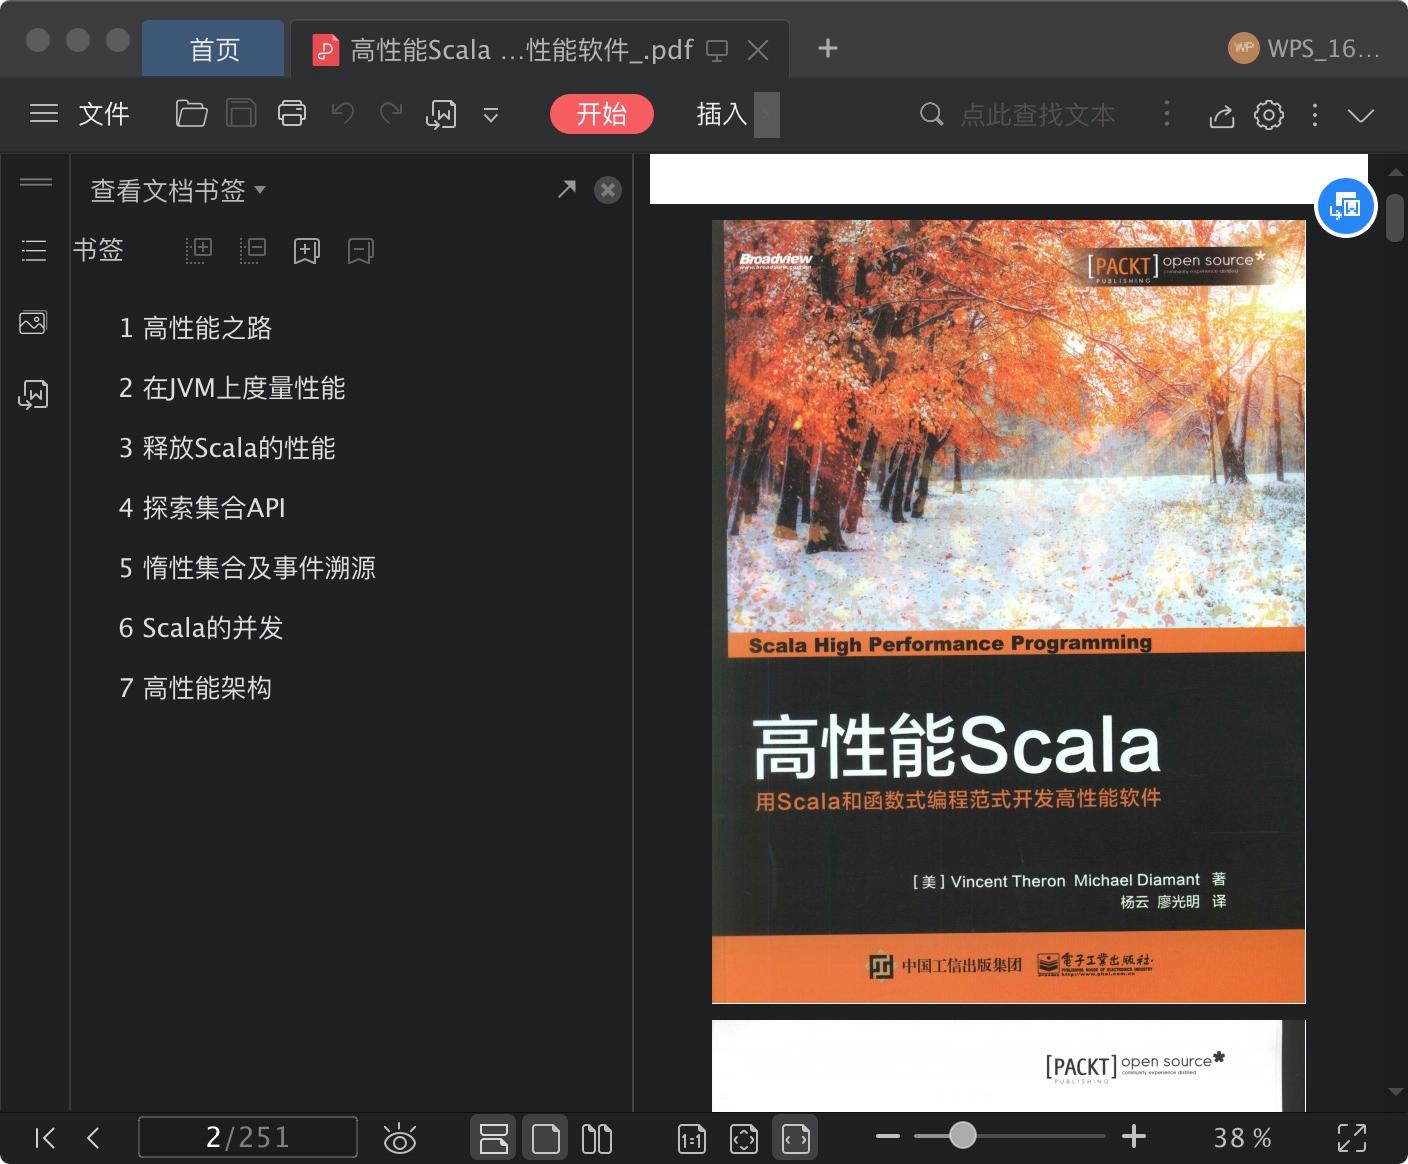 高性能Scala 用Scala和函数式编程范式开发高性能软件pdf电子书籍下载百度云